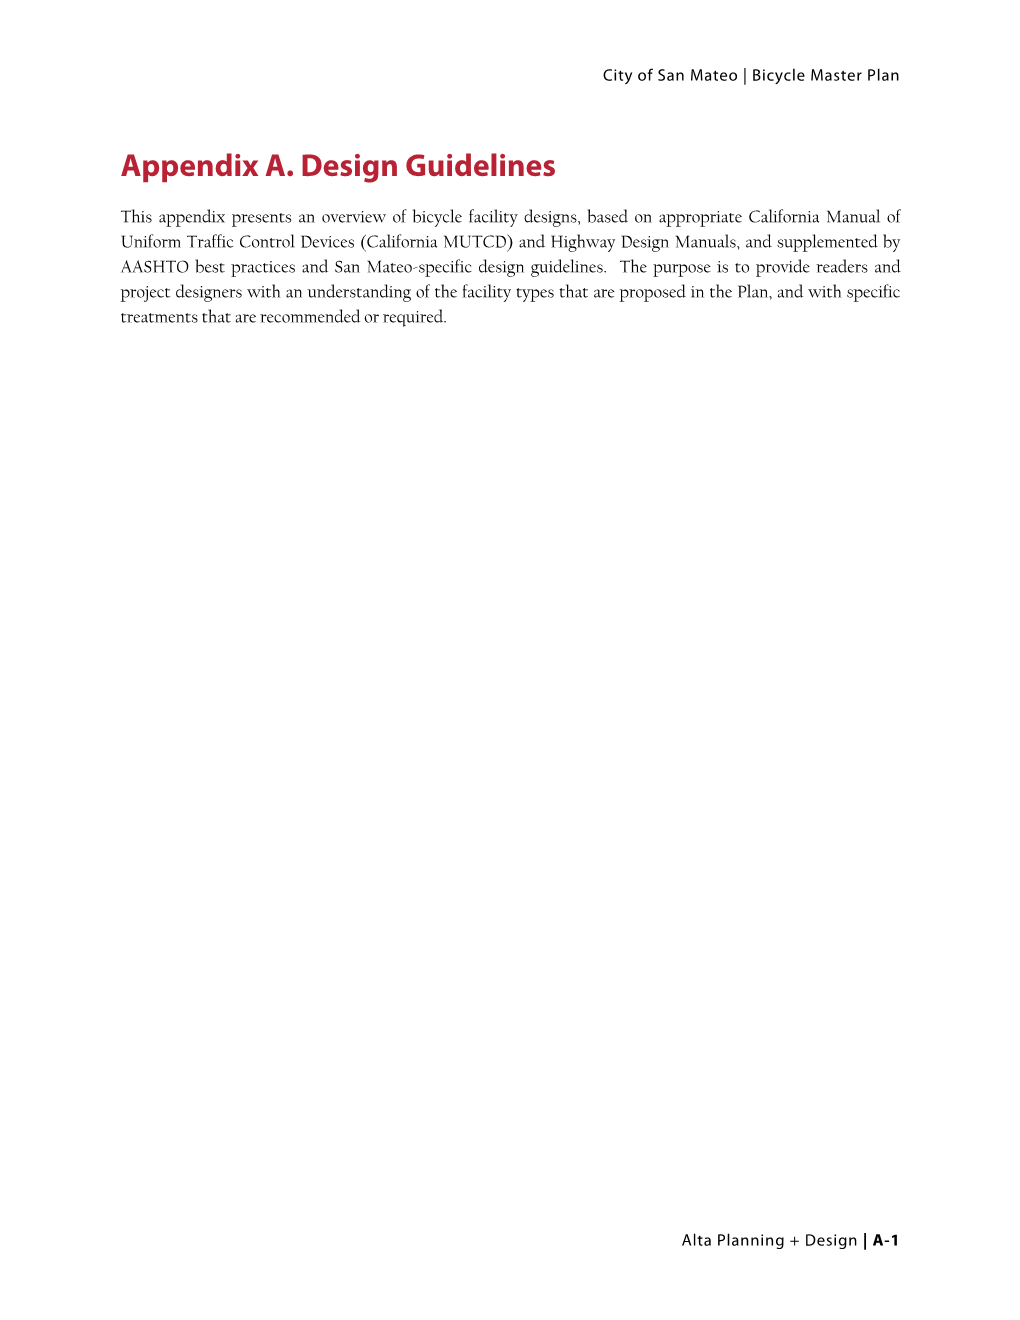 Appendix A. Design Guidelines